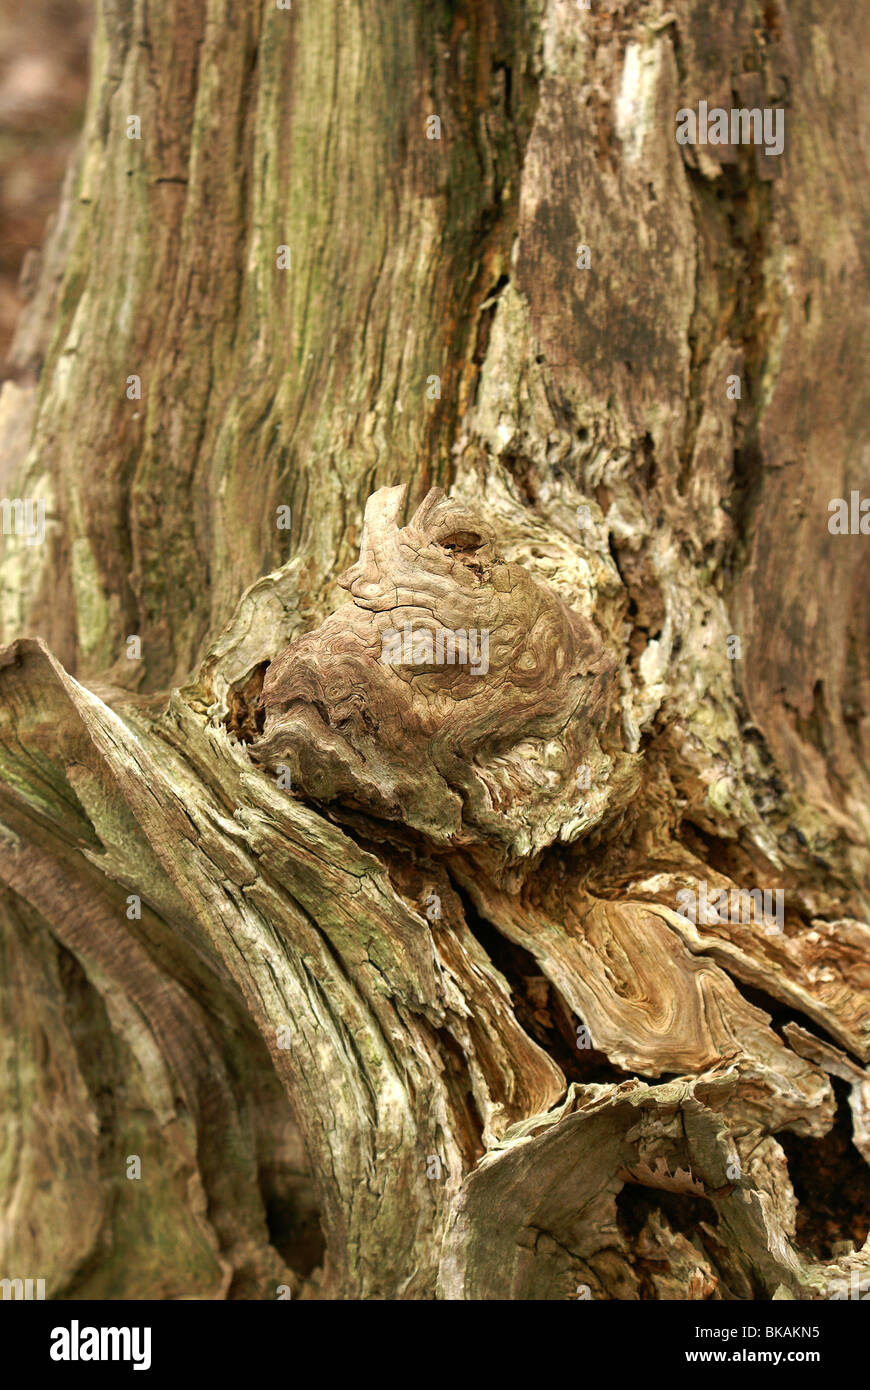 De grillige vormen van een dode boom. Stock Photo